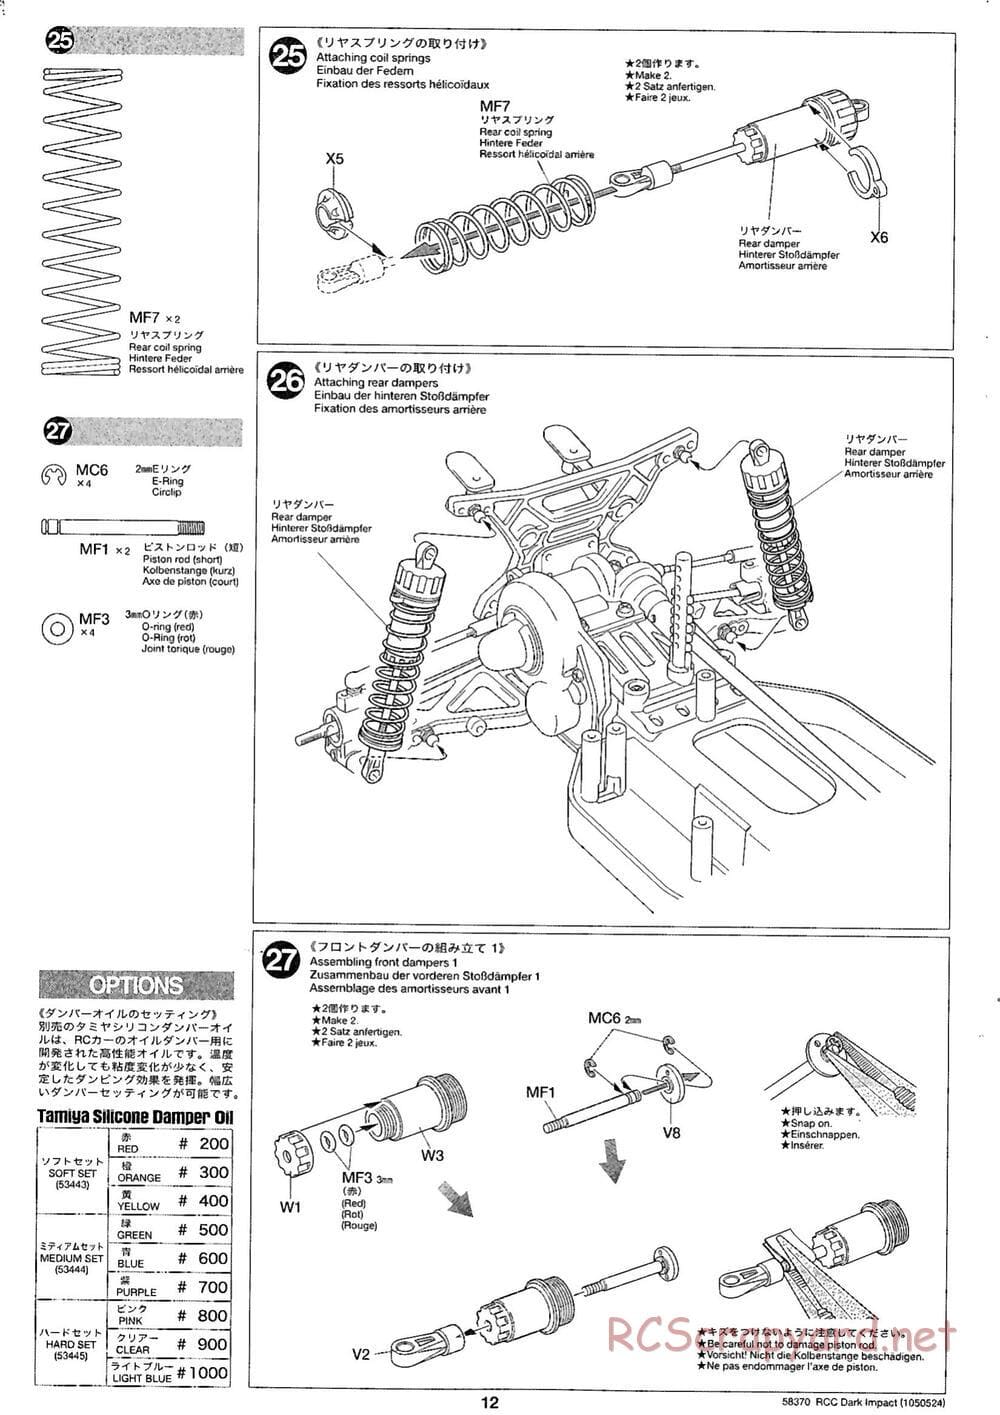 Tamiya - Dark Impact Chassis - Manual - Page 12